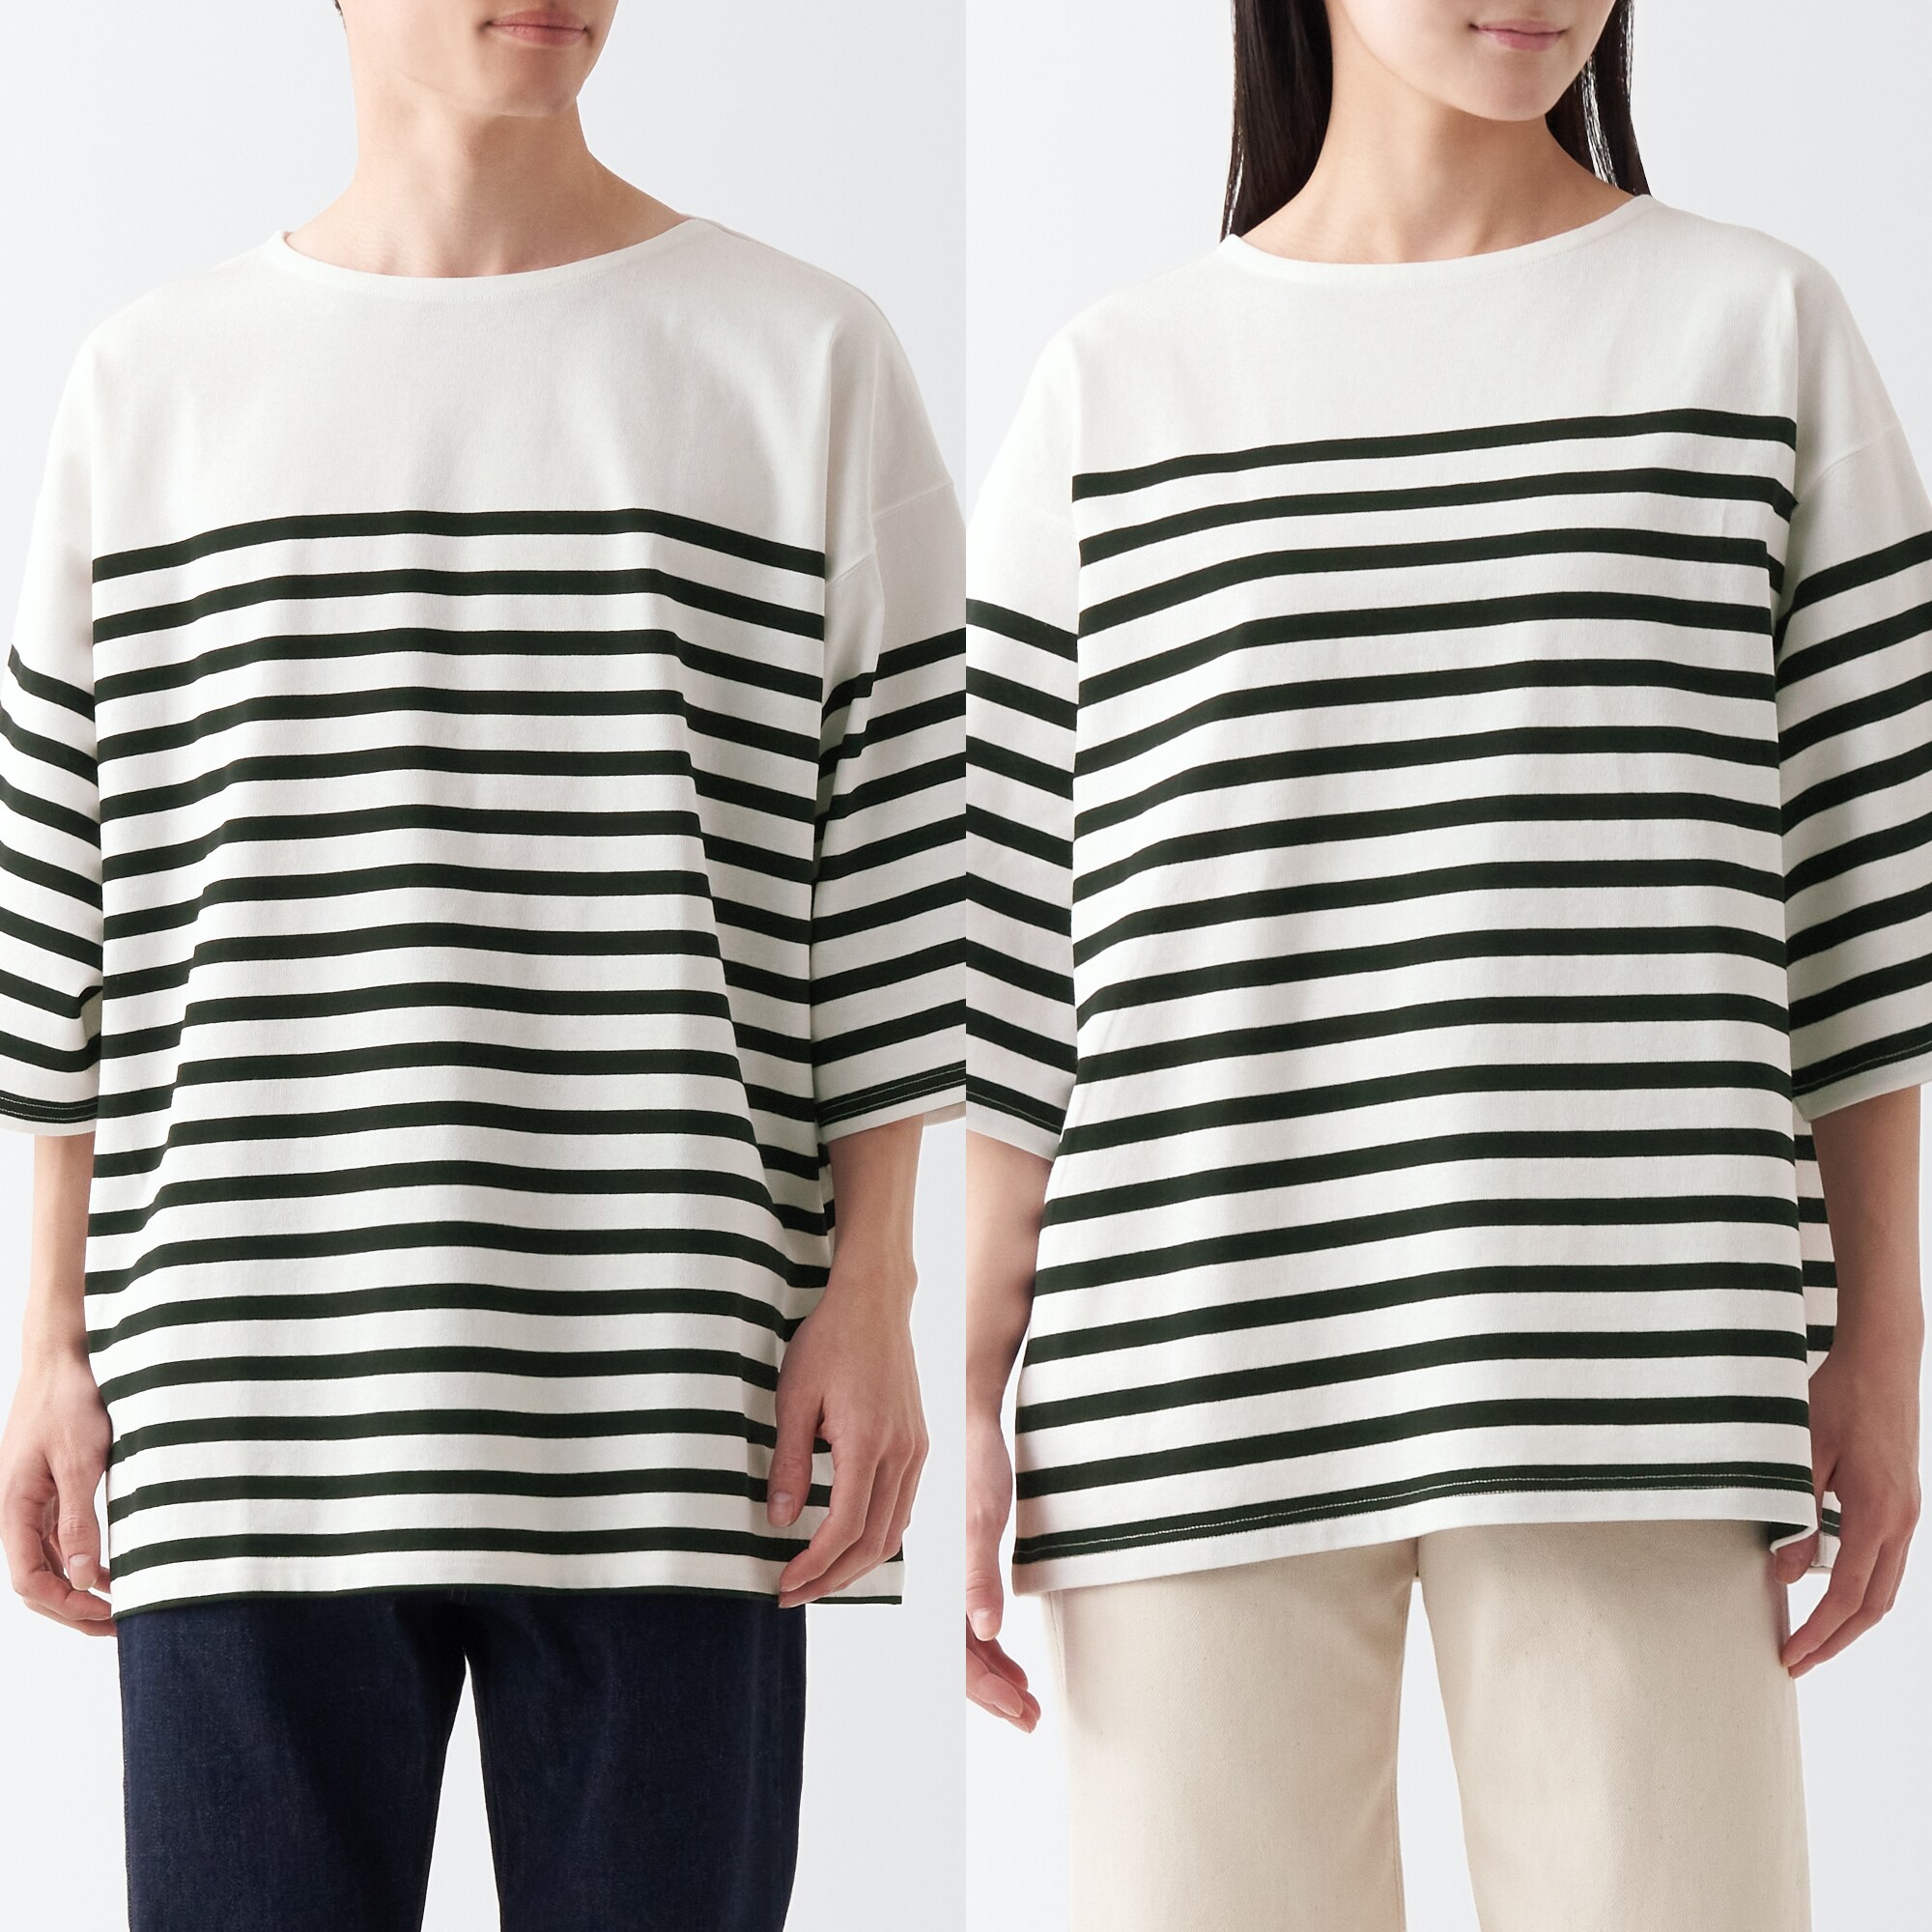 무인양품 일본 남녀공용 5부 티셔츠 인도면 풀오버 스트라이프